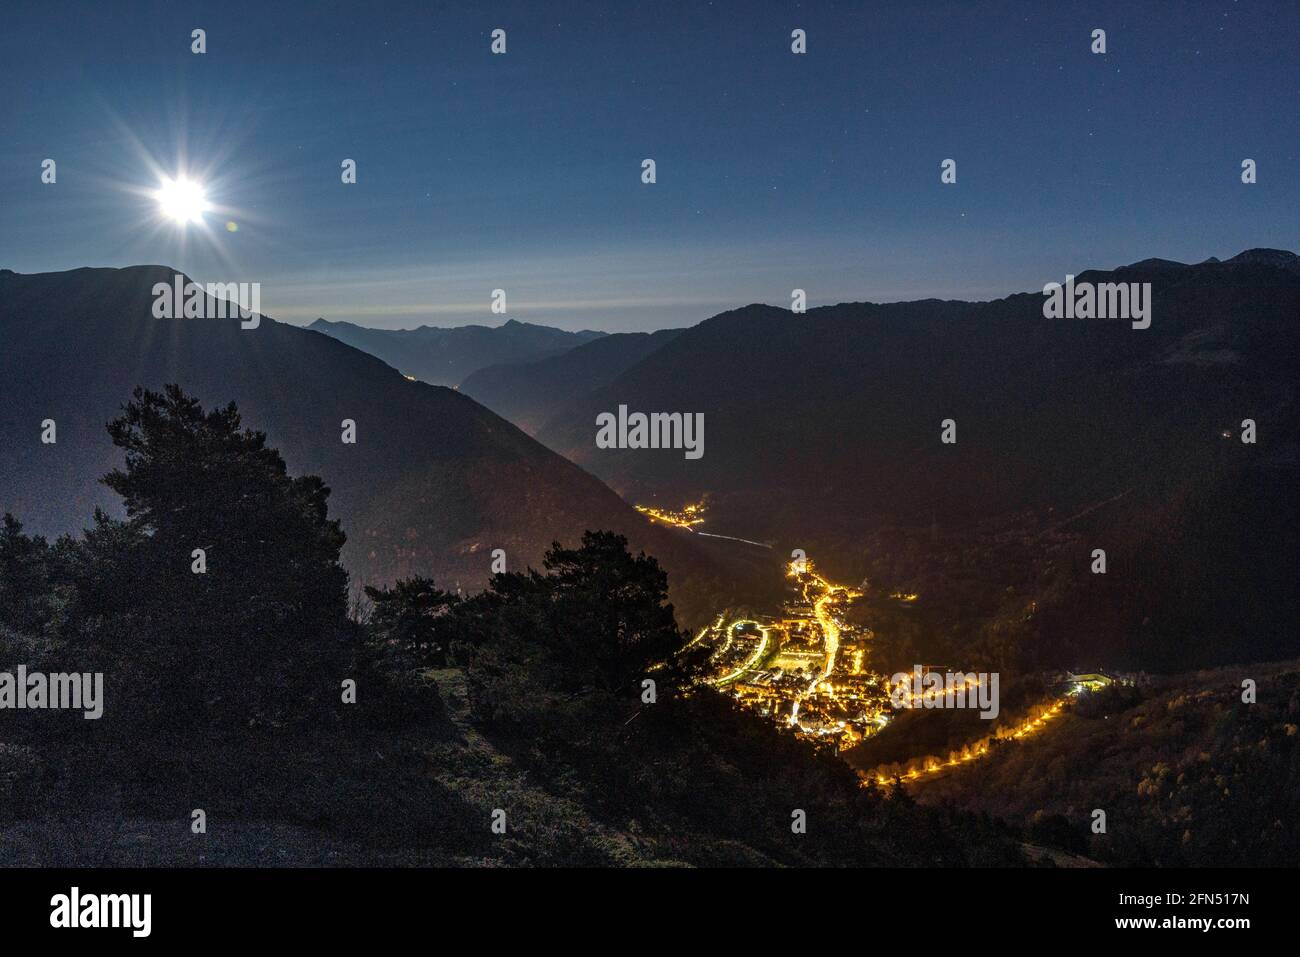 Ville et vallée de Vielha vue de près de la Bassa d'Oles sur une pleine nuit de lune (Vallée de l'Aran, Catalogne, Espagne, Pyrénées) ESP: Vista de Vielha de noche Banque D'Images